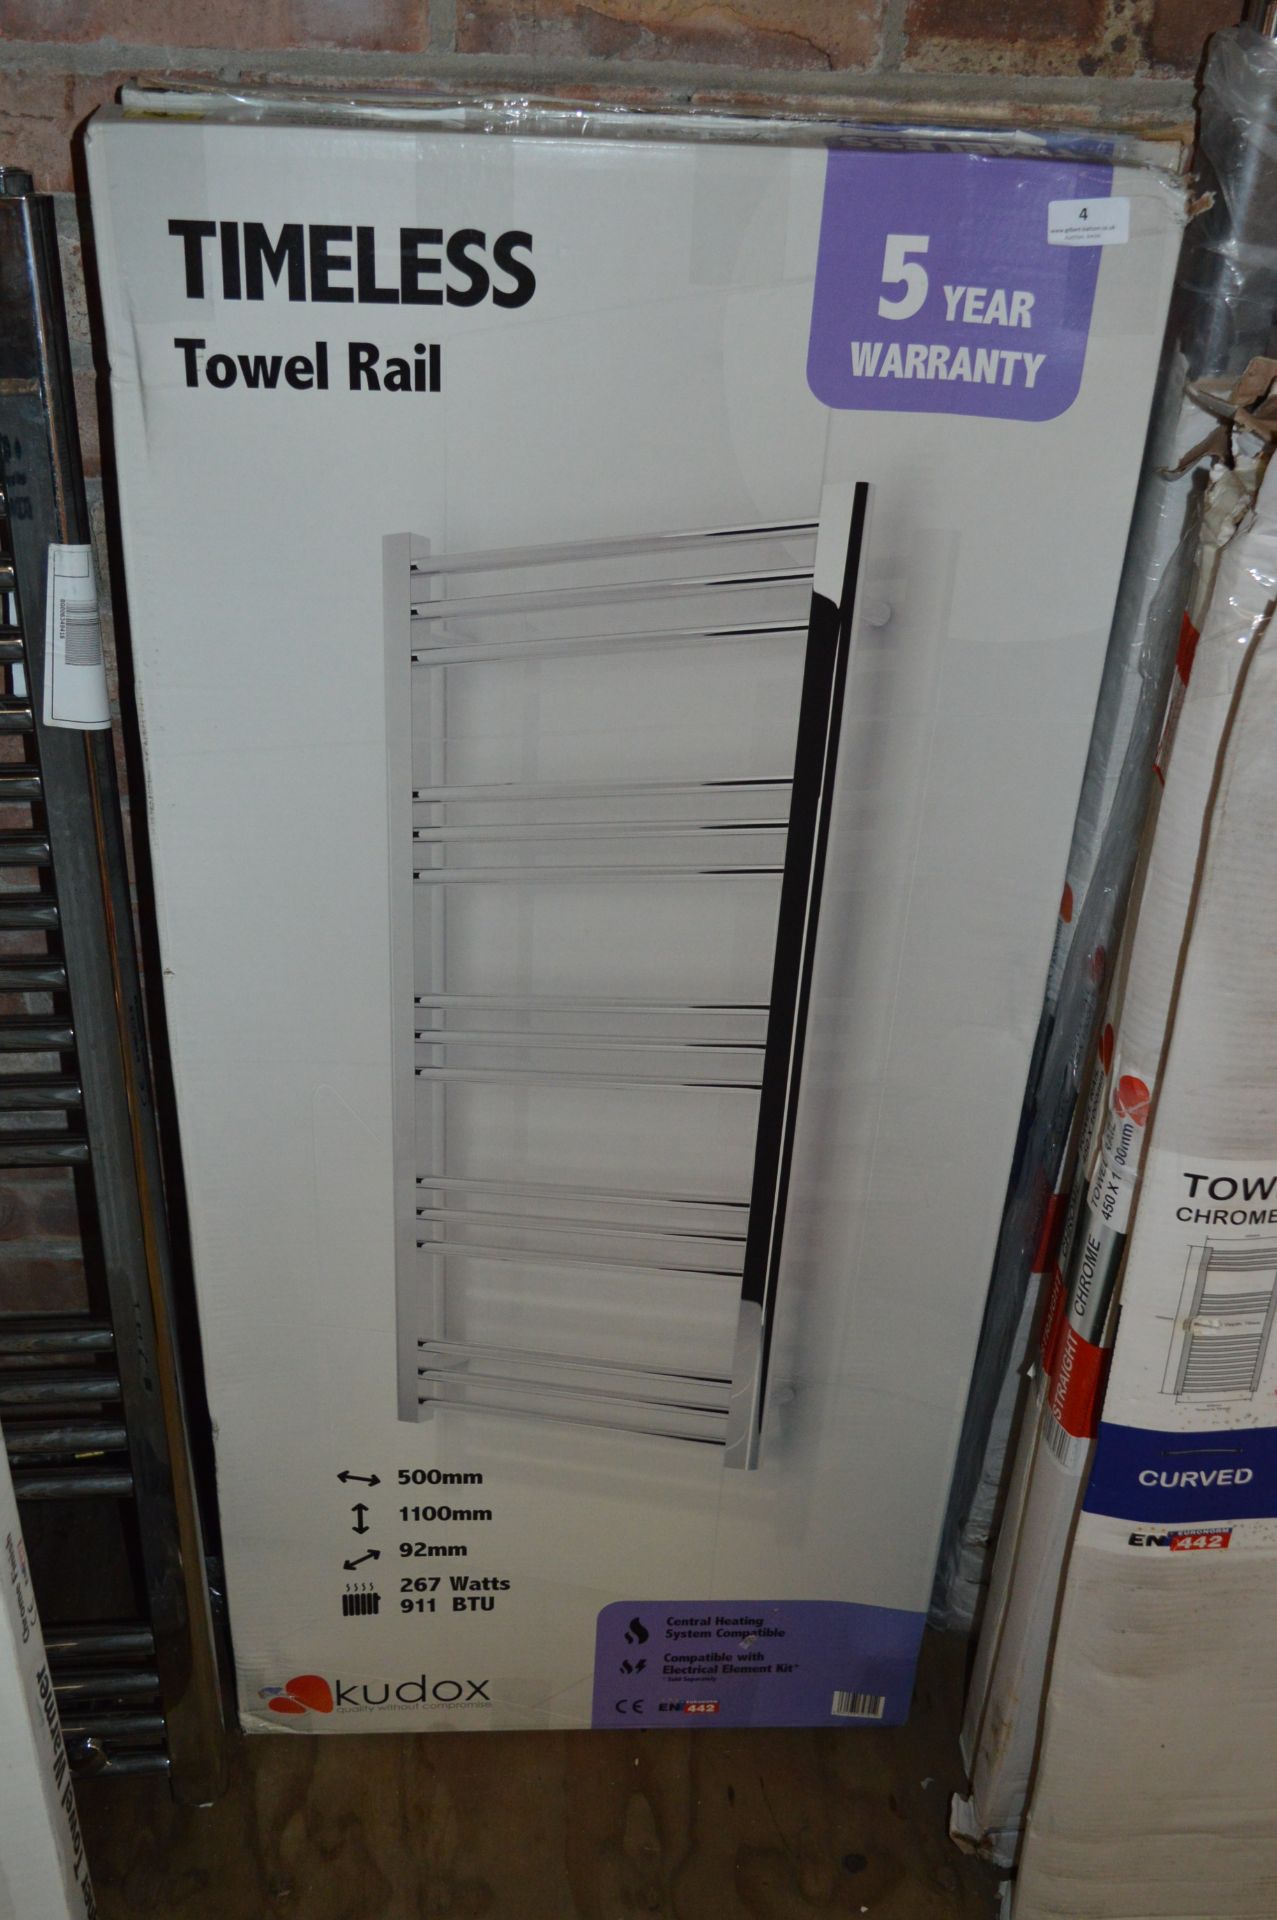 *Kudox Timeless Towel Rail 500x1100mm